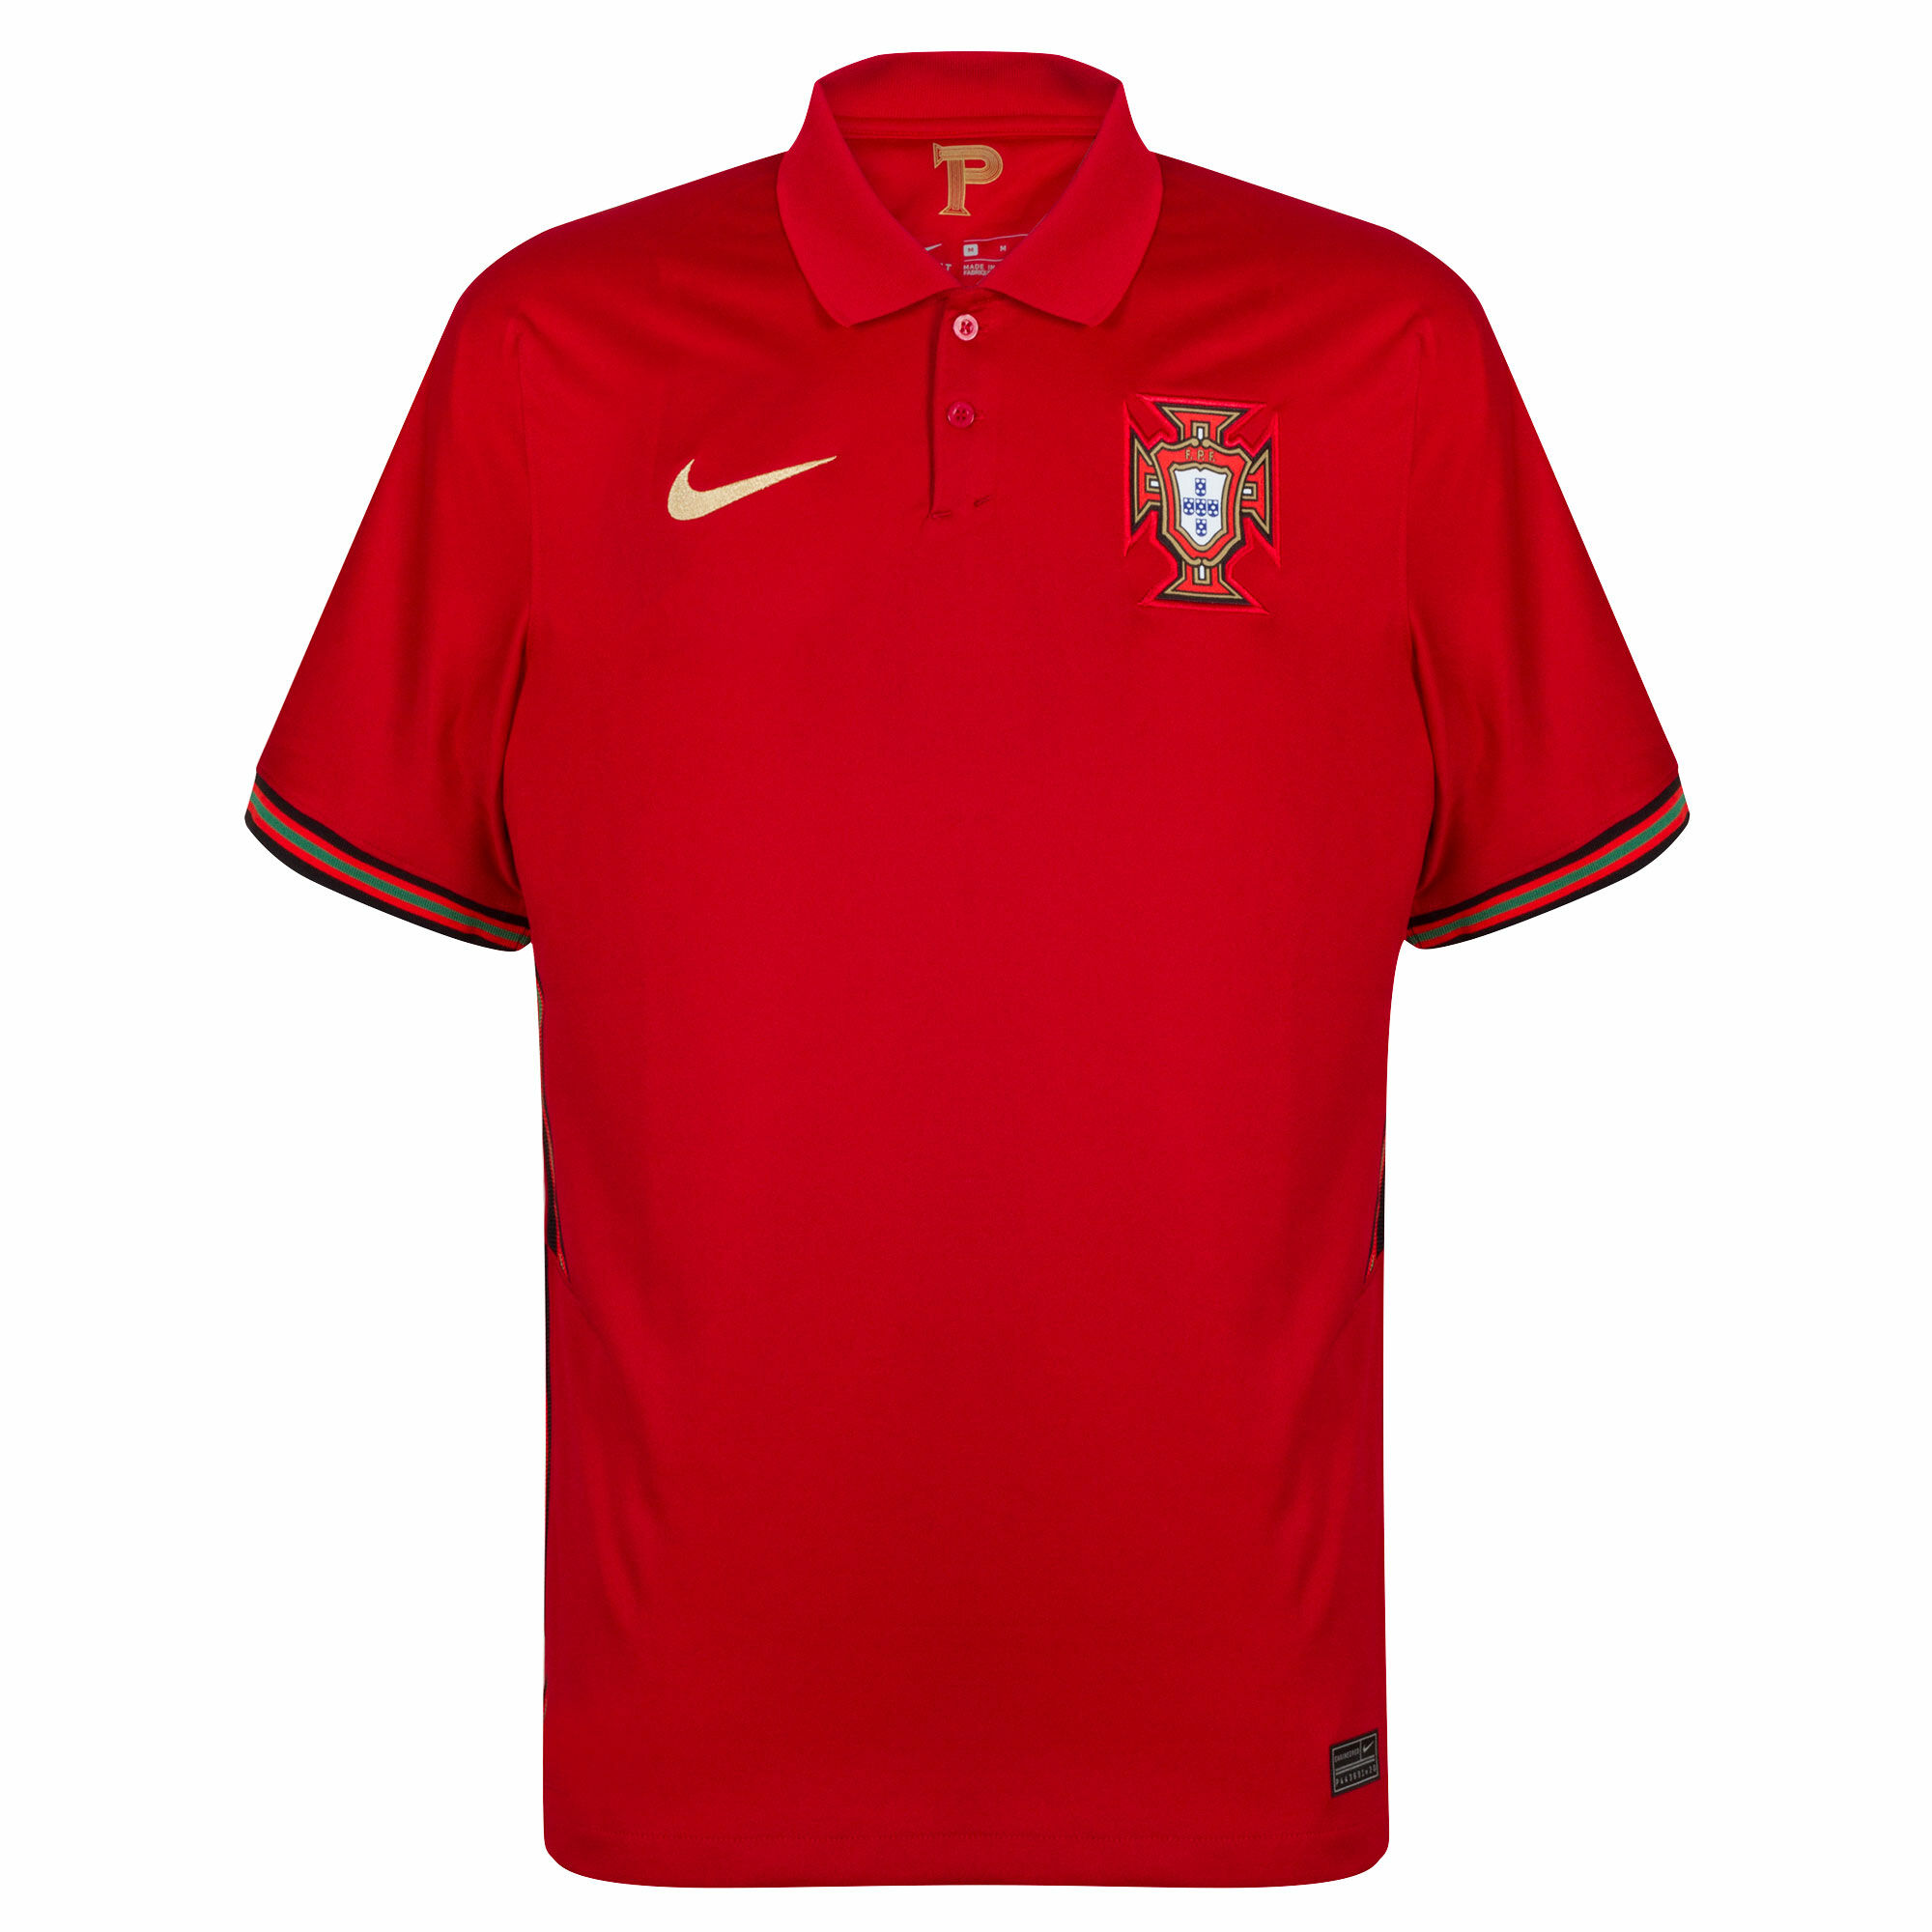 Portugalsko - Dres fotbalový - sezóna 2020/21, domácí, červený